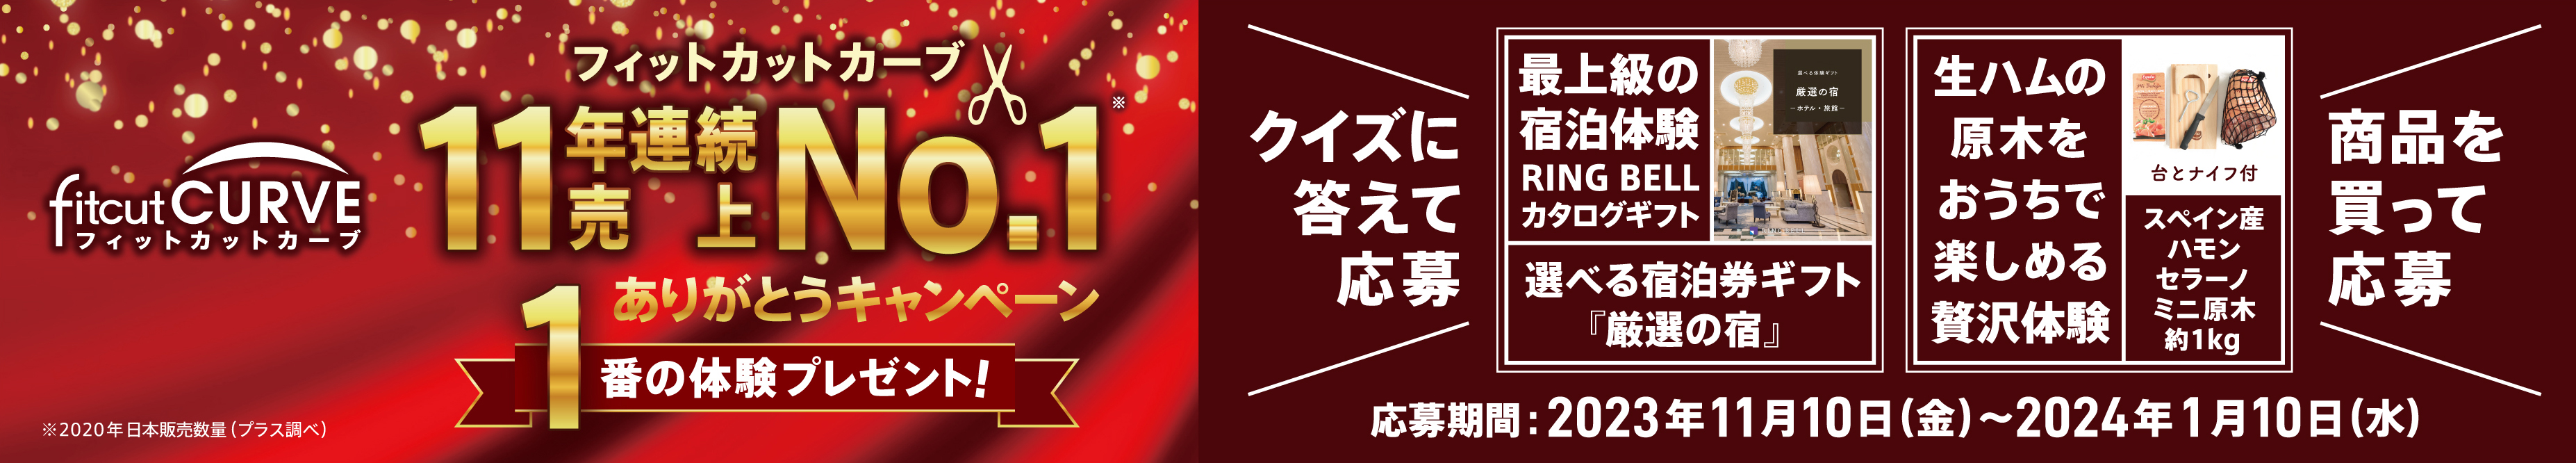 フィットカットカーブ 11年連続売上No.1 ありがとうキャンペーン